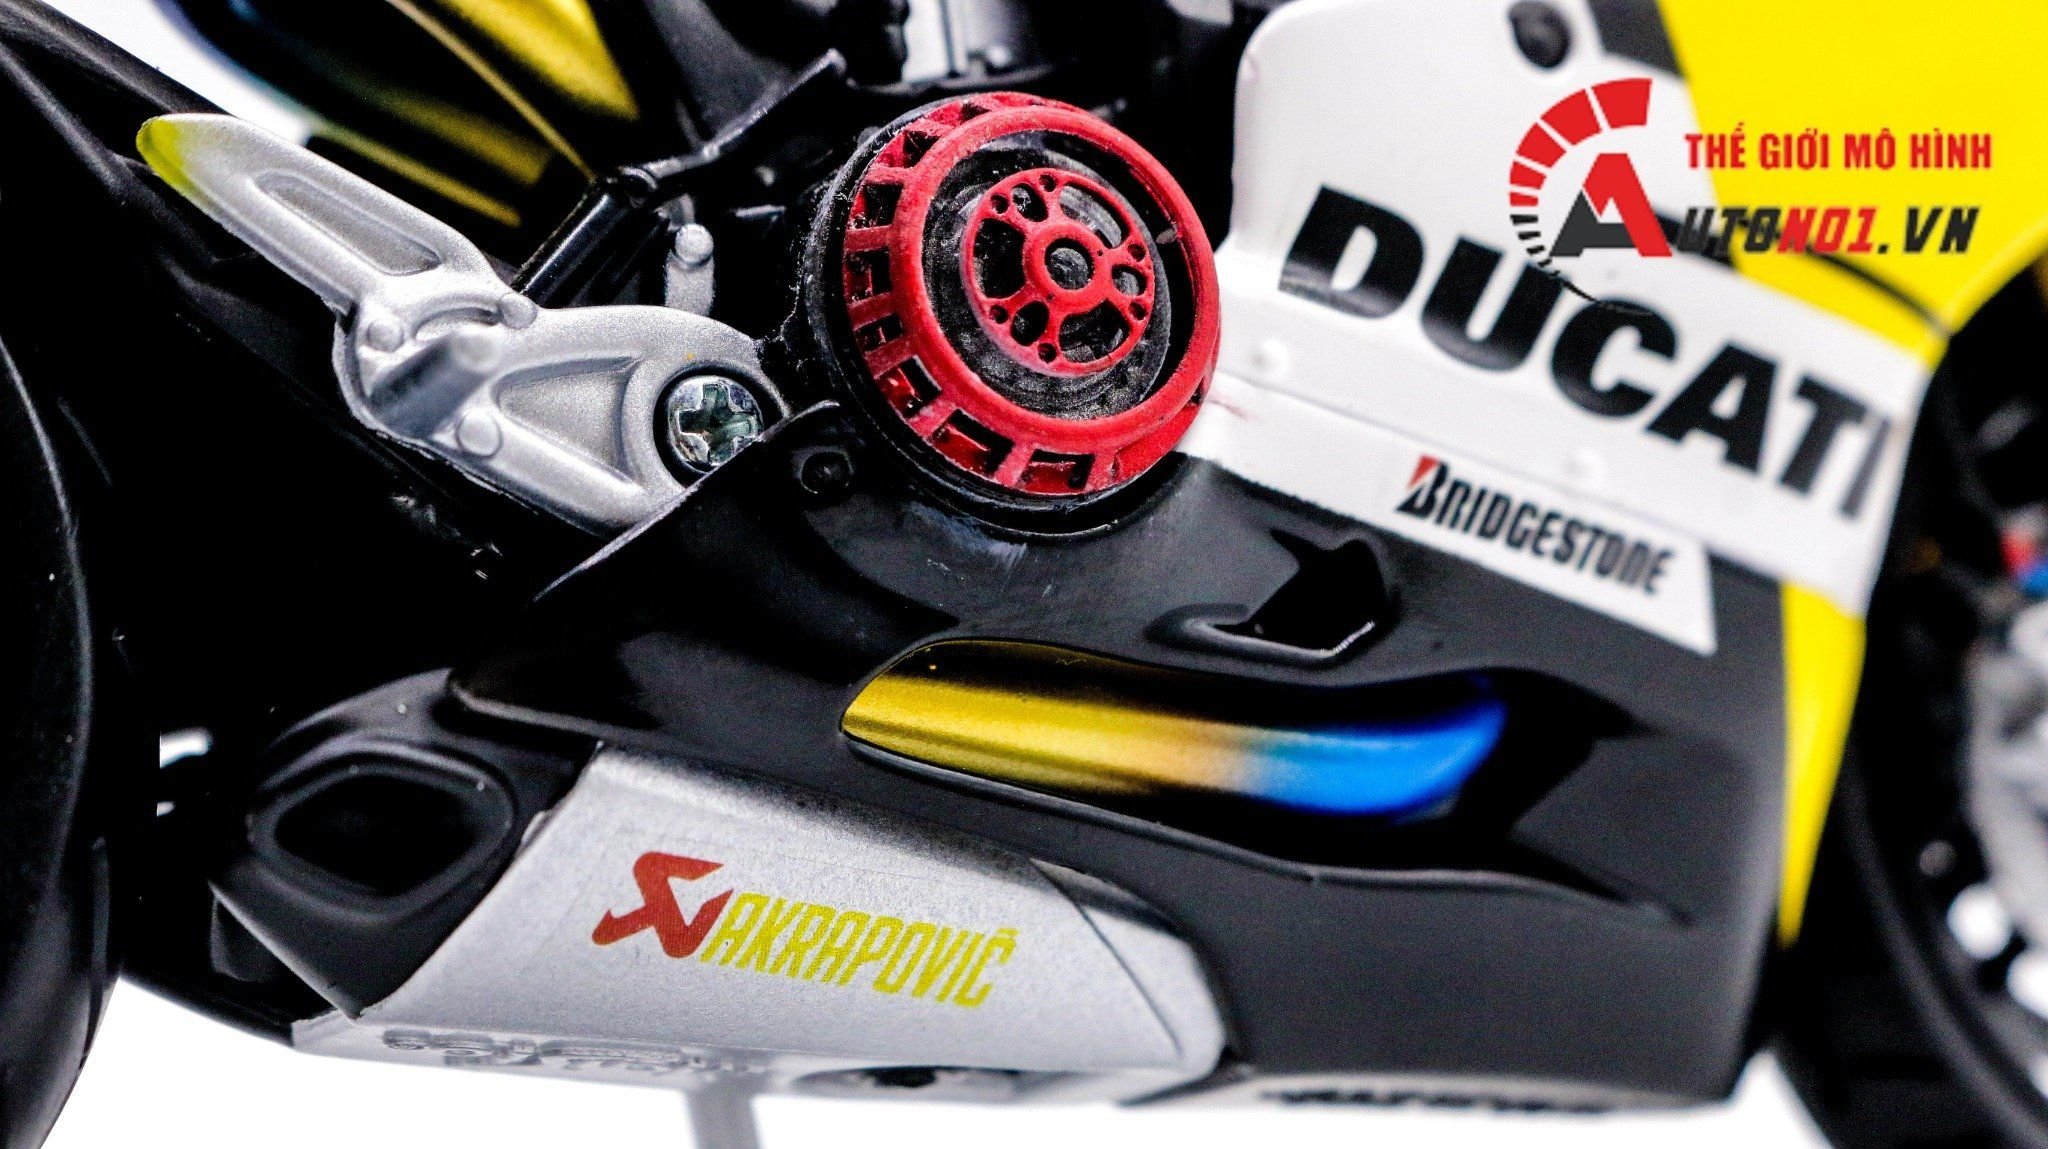  Mô hình xe độ Ducati 899 Panigale Nồi Khô Tỉ Lệ 1:12 Autono1 D077 